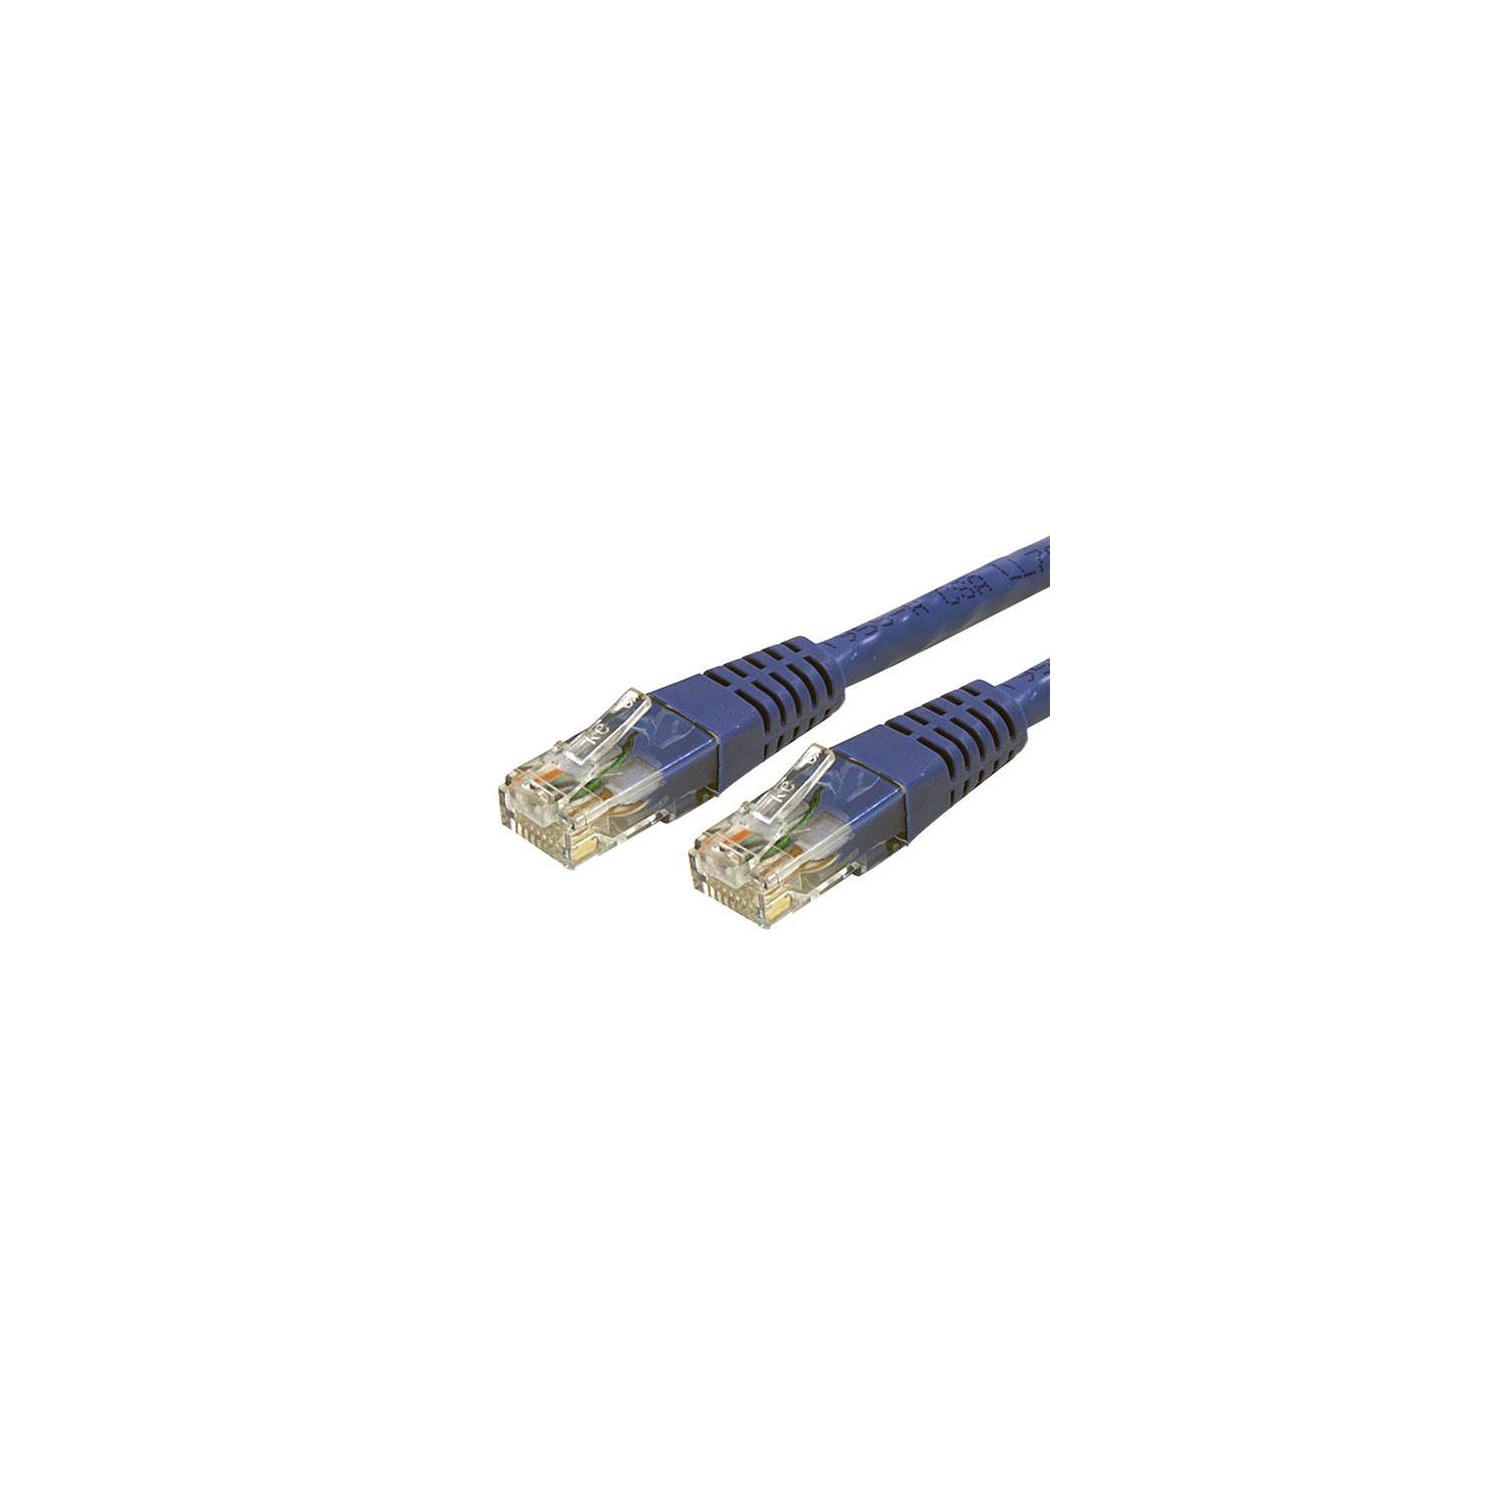 100ft CAT6 Ethernet Cable Blue Cat 6 PoE (C6PATCH100BL) - Cat 6 Cables, Cables